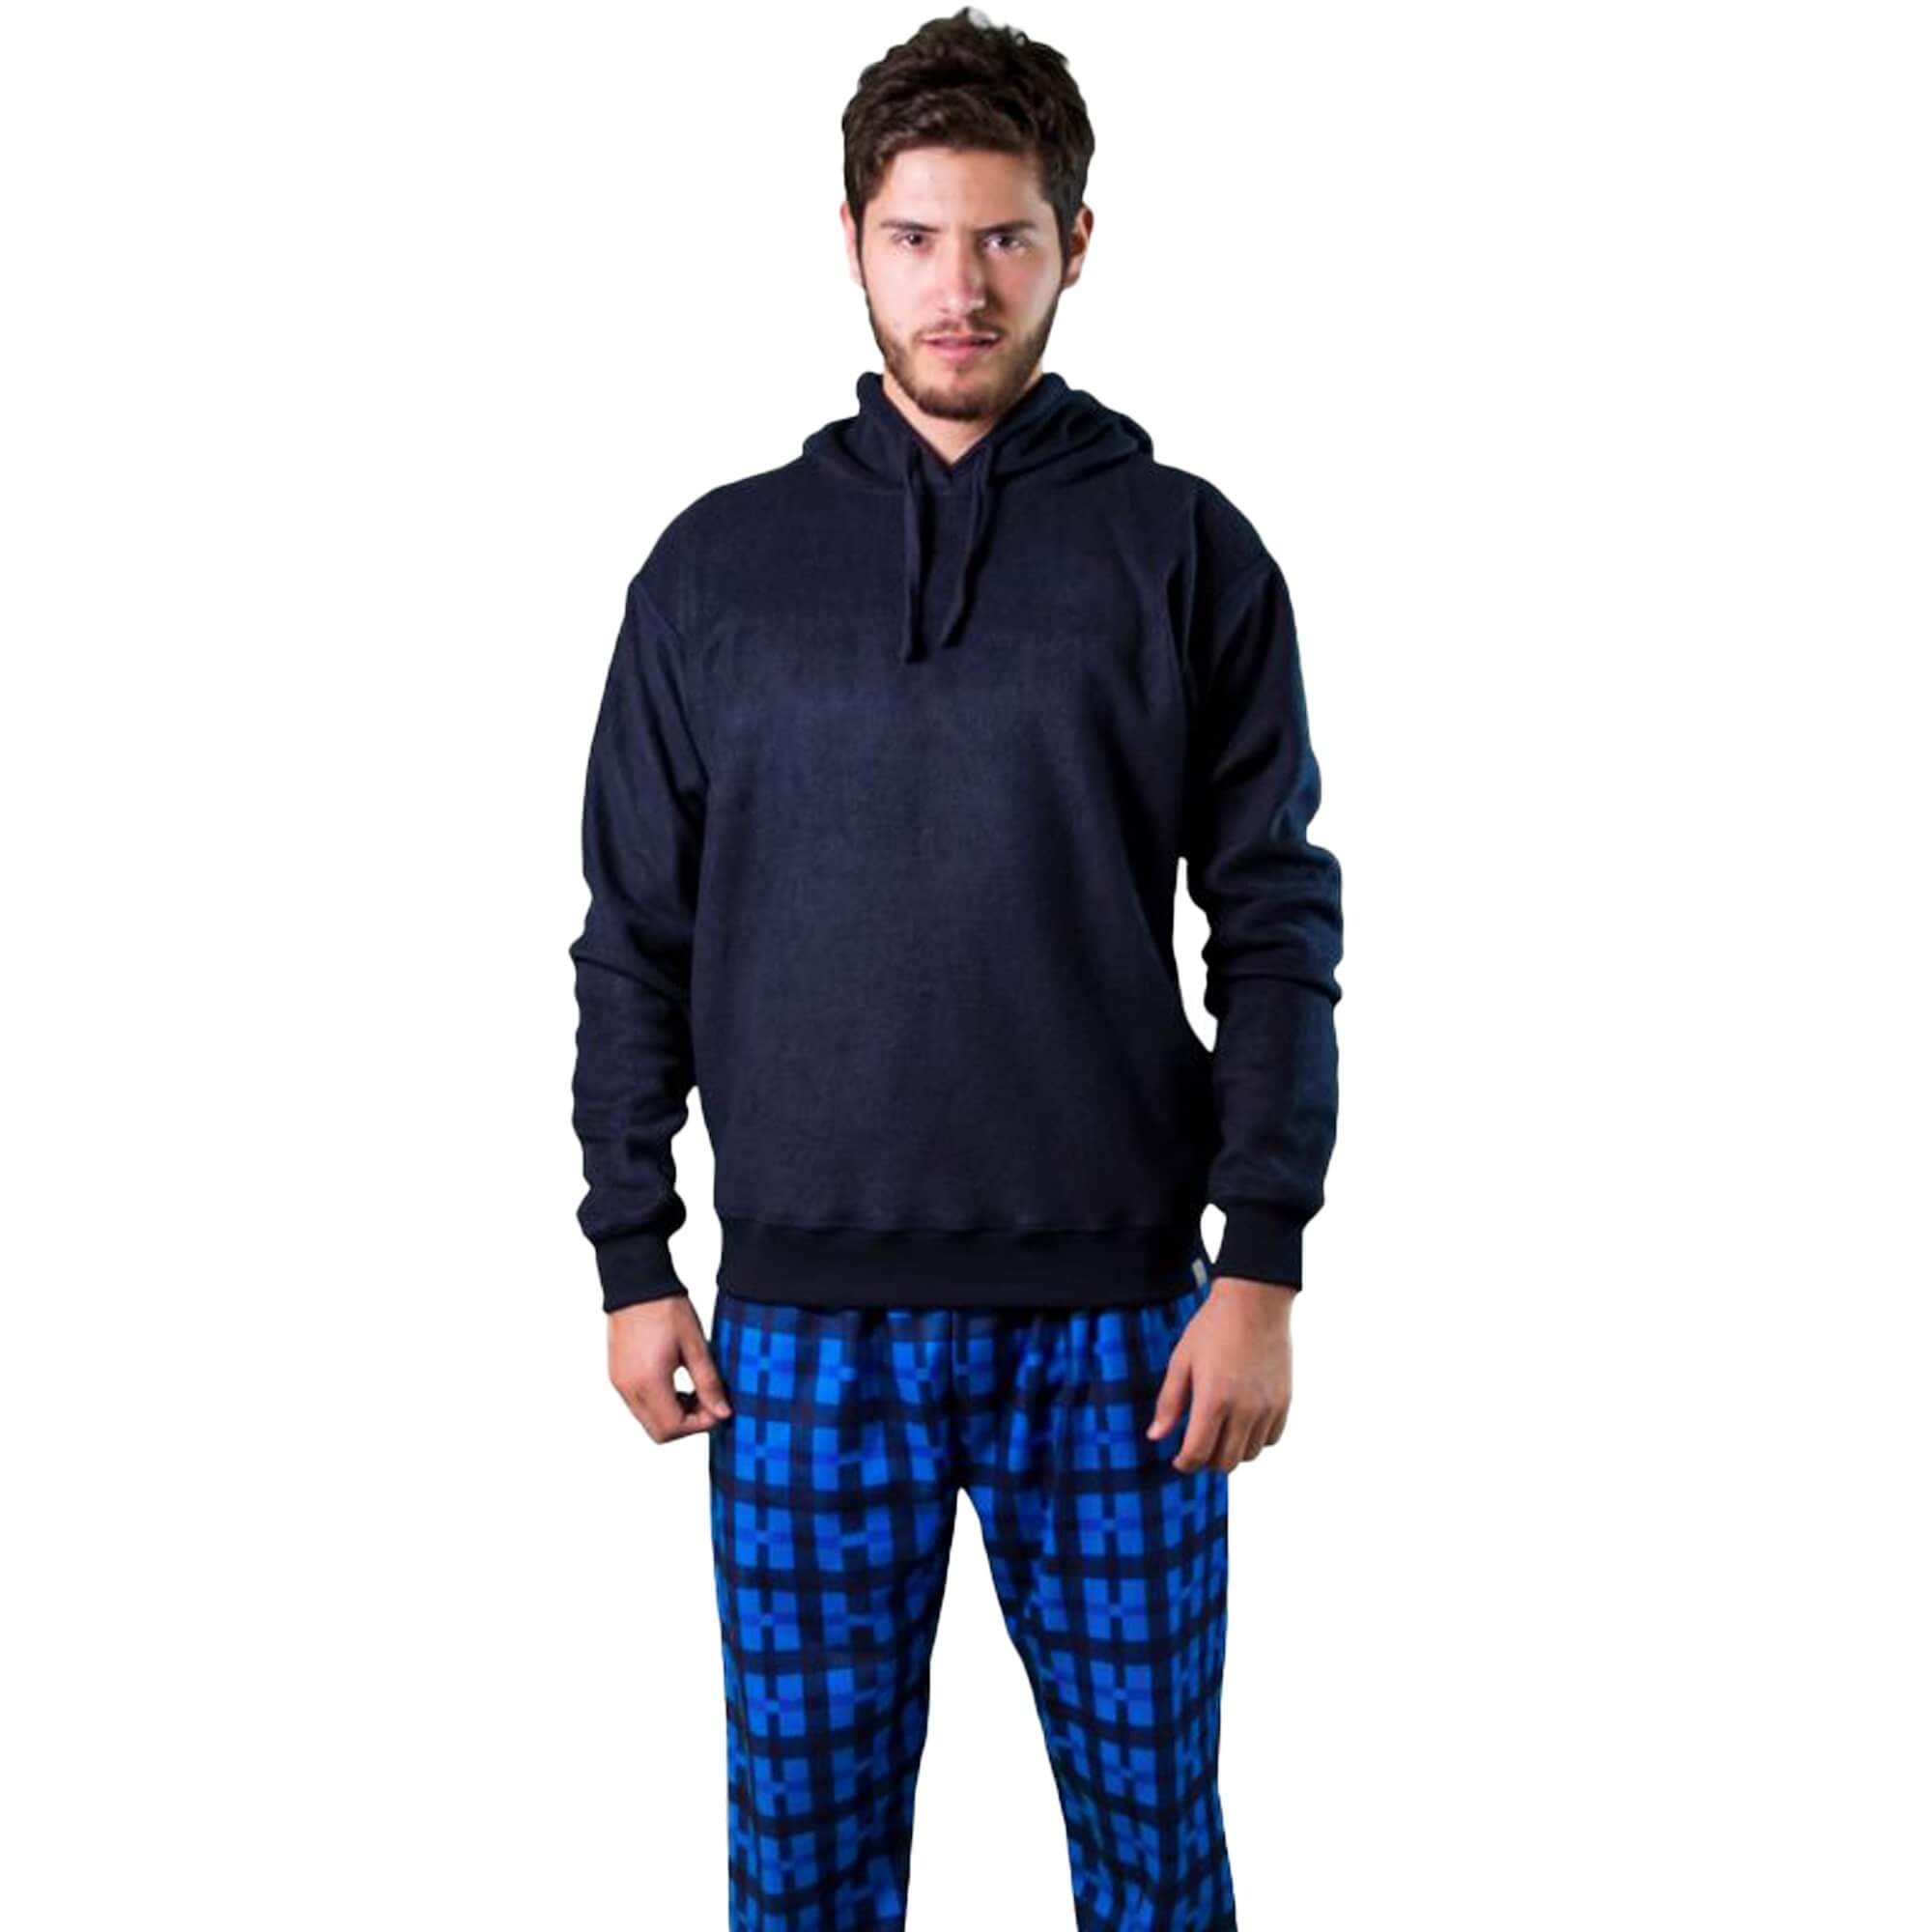 Hombre medio cuerpo de frente vistiendo la Pijama Leñador Azul Oscuro de Arctic Fox Colombia